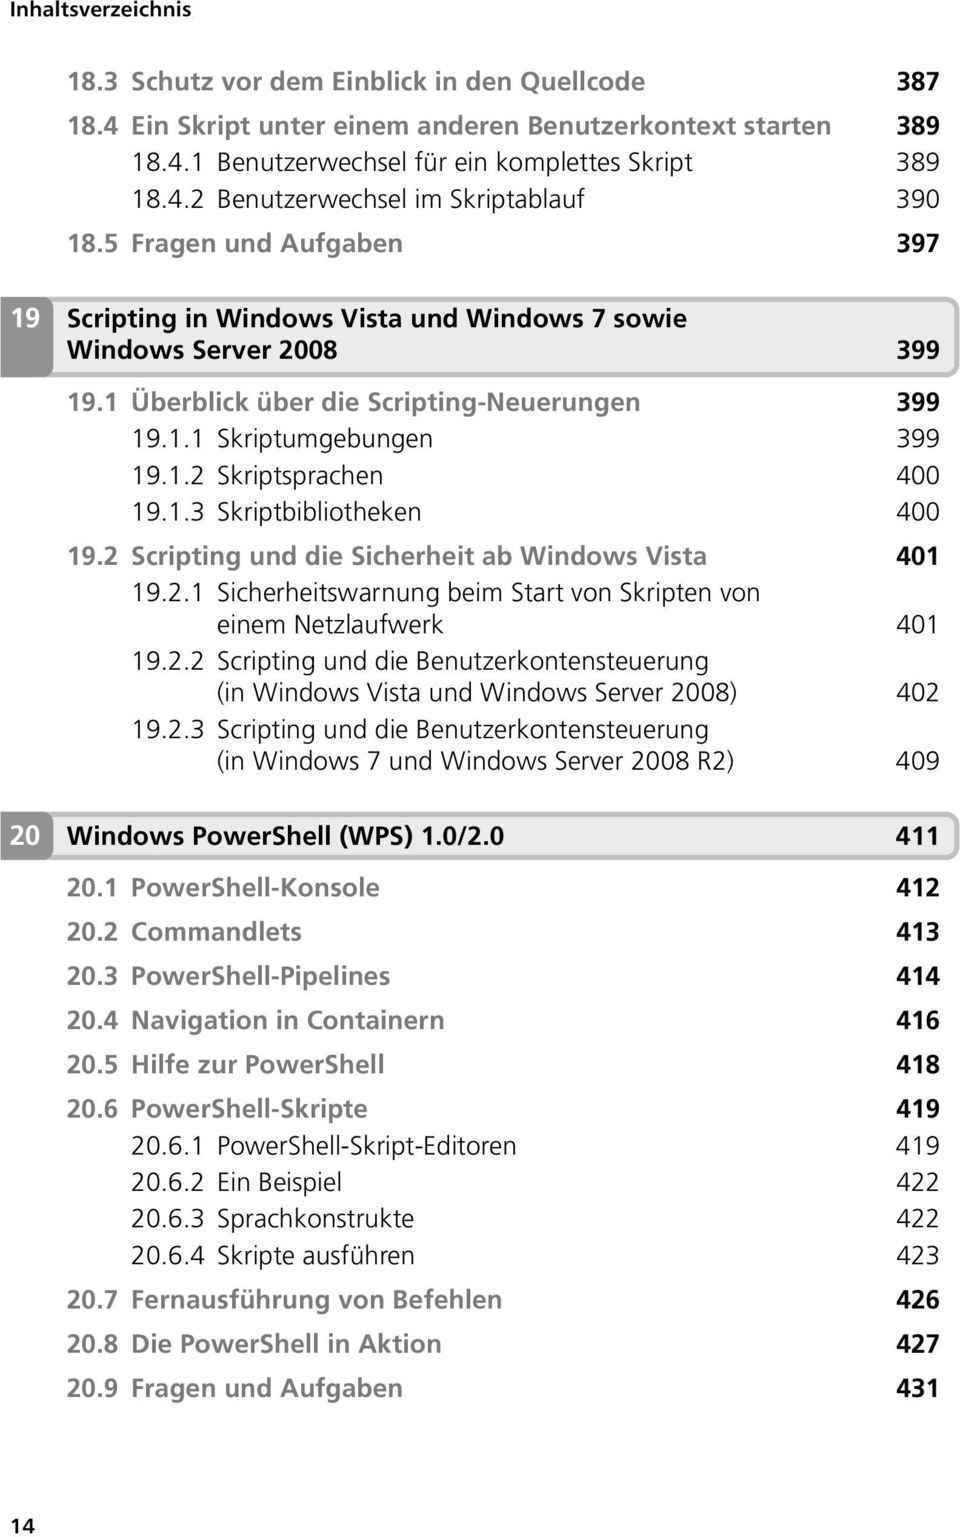 1.3 Skriptbibliotheken 400 19.2 Scripting und die Sicherheit ab Windows Vista 401 19.2.1 Sicherheitswarnung beim Start von Skripten von einem Netzlaufwerk 401 19.2.2 Scripting und die Benutzerkontensteuerung (in Windows Vista und Windows Server 2008) 402 19.